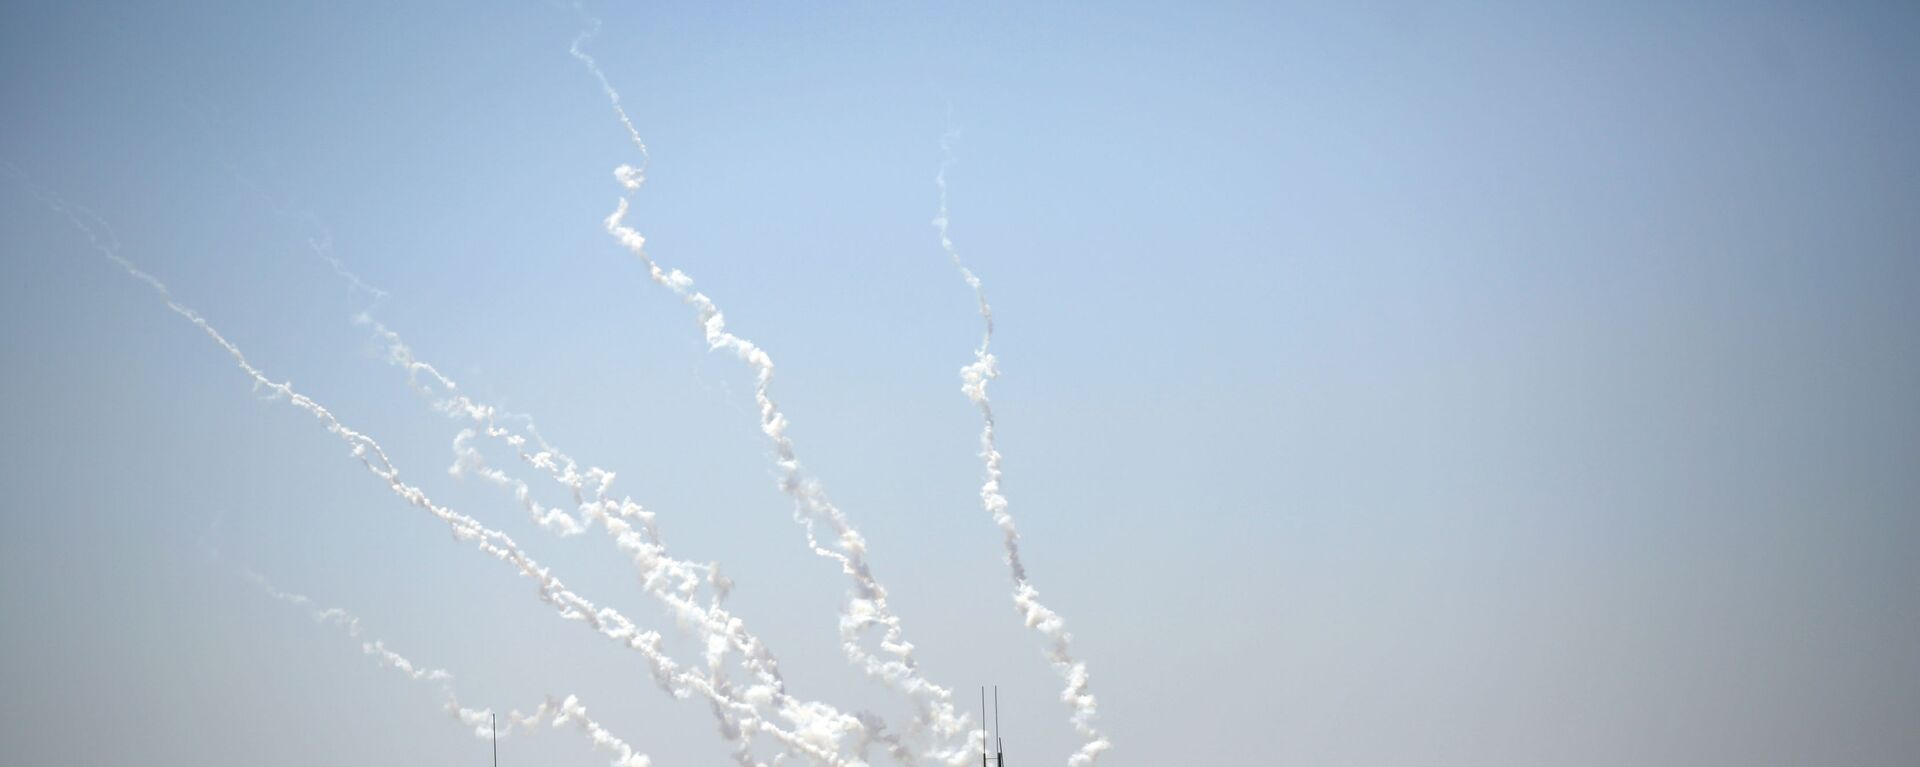 إطلاق رشقات جديدة من صواريخ المقاومة الفلسطينية من قطاع غزة، فلسطين 13 مايو 2021 - سبوتنيك عربي, 1920, 17.05.2021